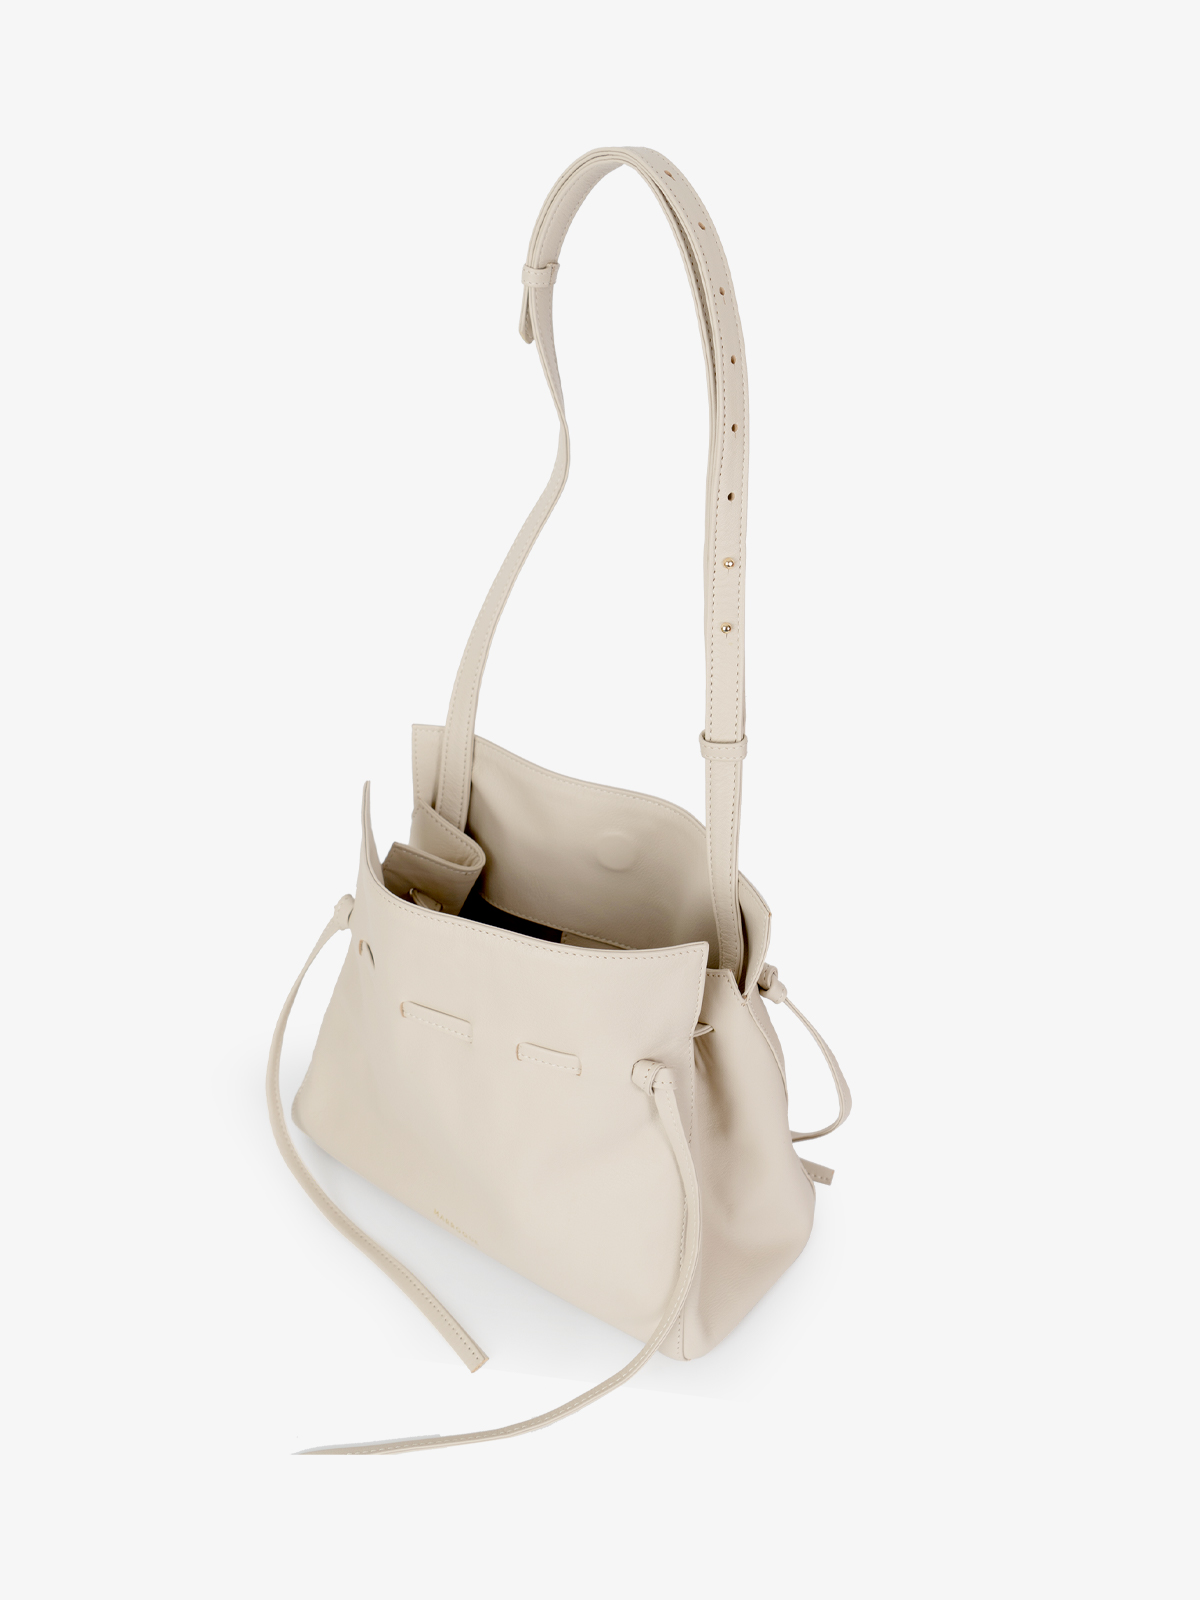 Marroque wendy 25 tote bag in Ivory. Genuine leather bag. Shoulder bag crossbody bag.